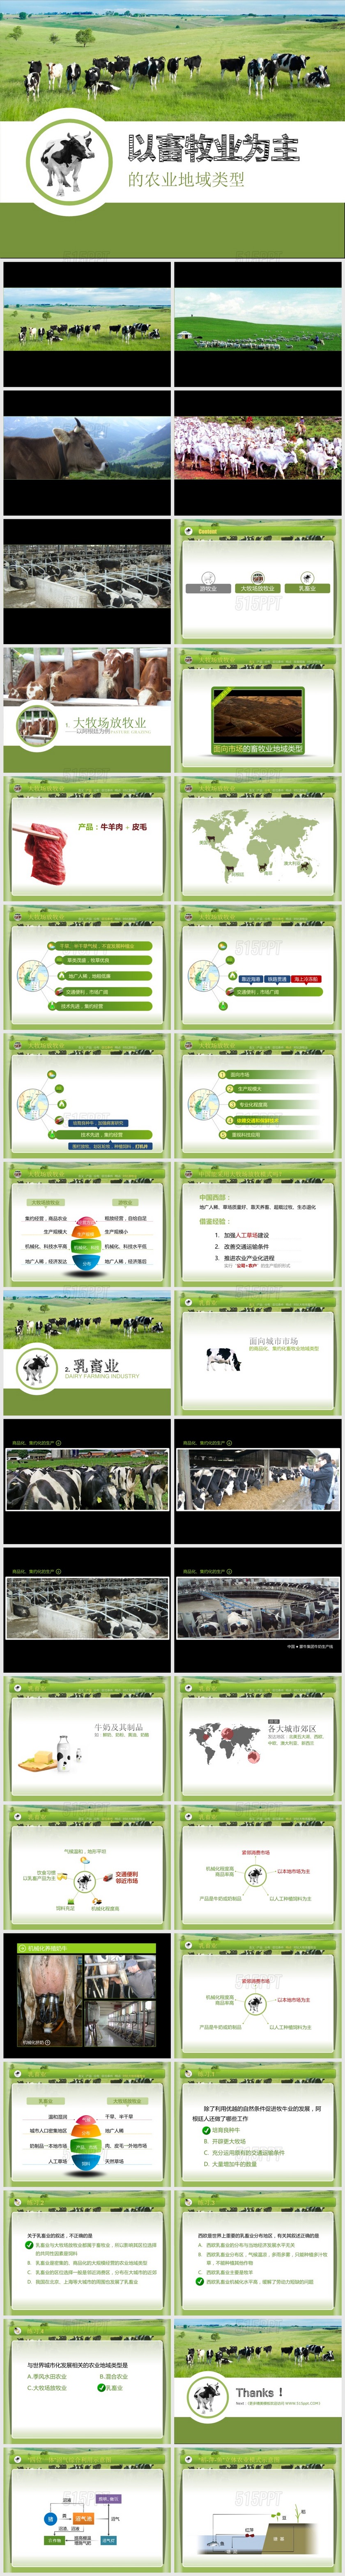 畜牧养殖业发展宣传PPT模板